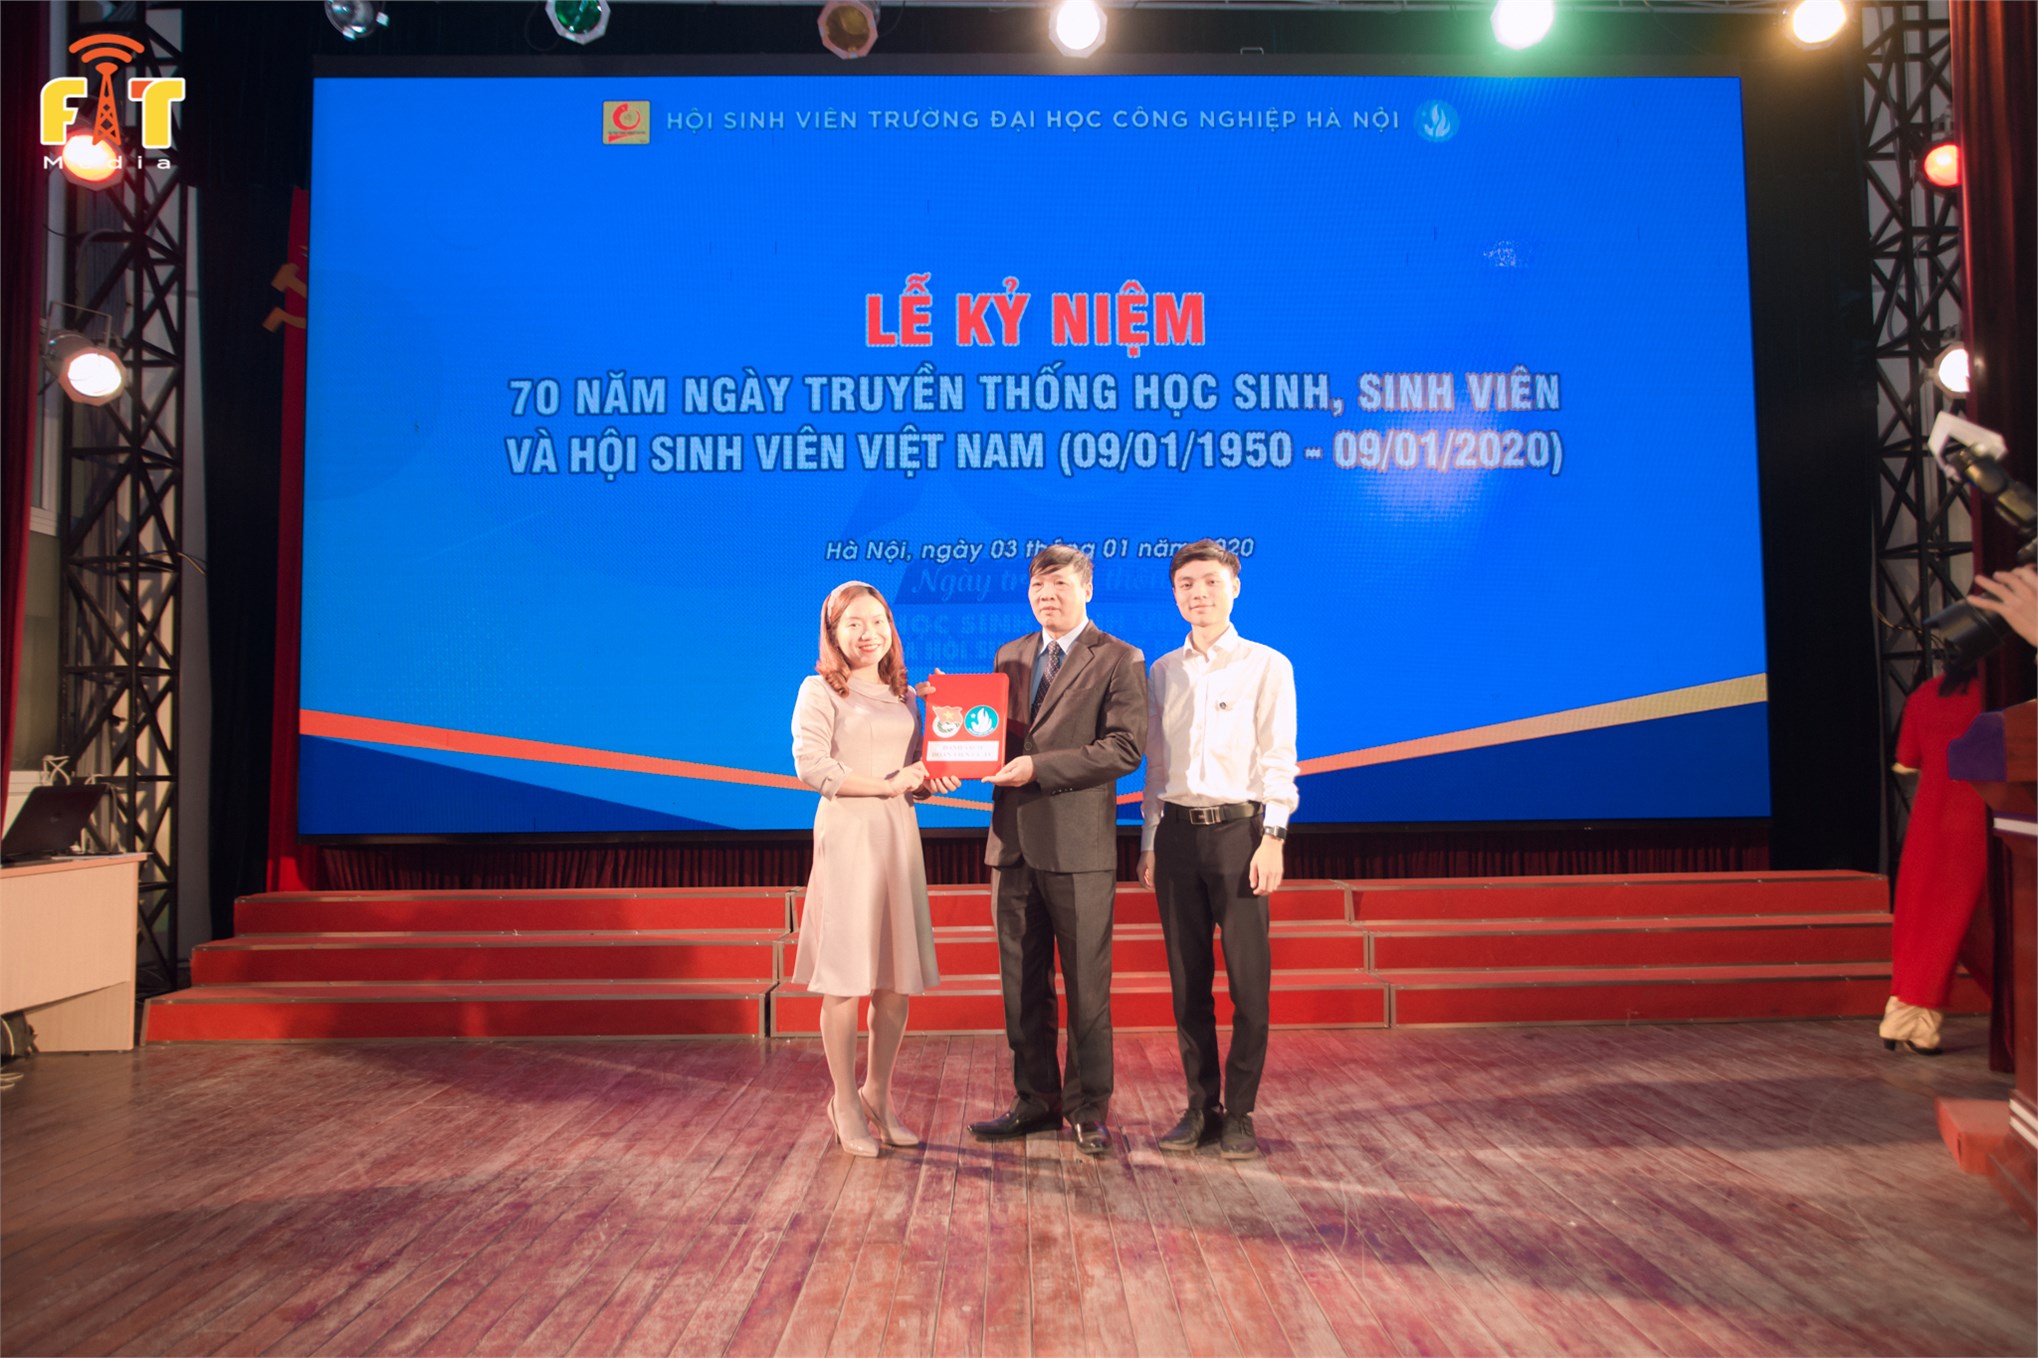 Kỷ niệm 70 năm ngày truyền thống Học sinh Sinh viên và Hội sinh viên Việt Nam (09/01/1950 - 09/01/2020)